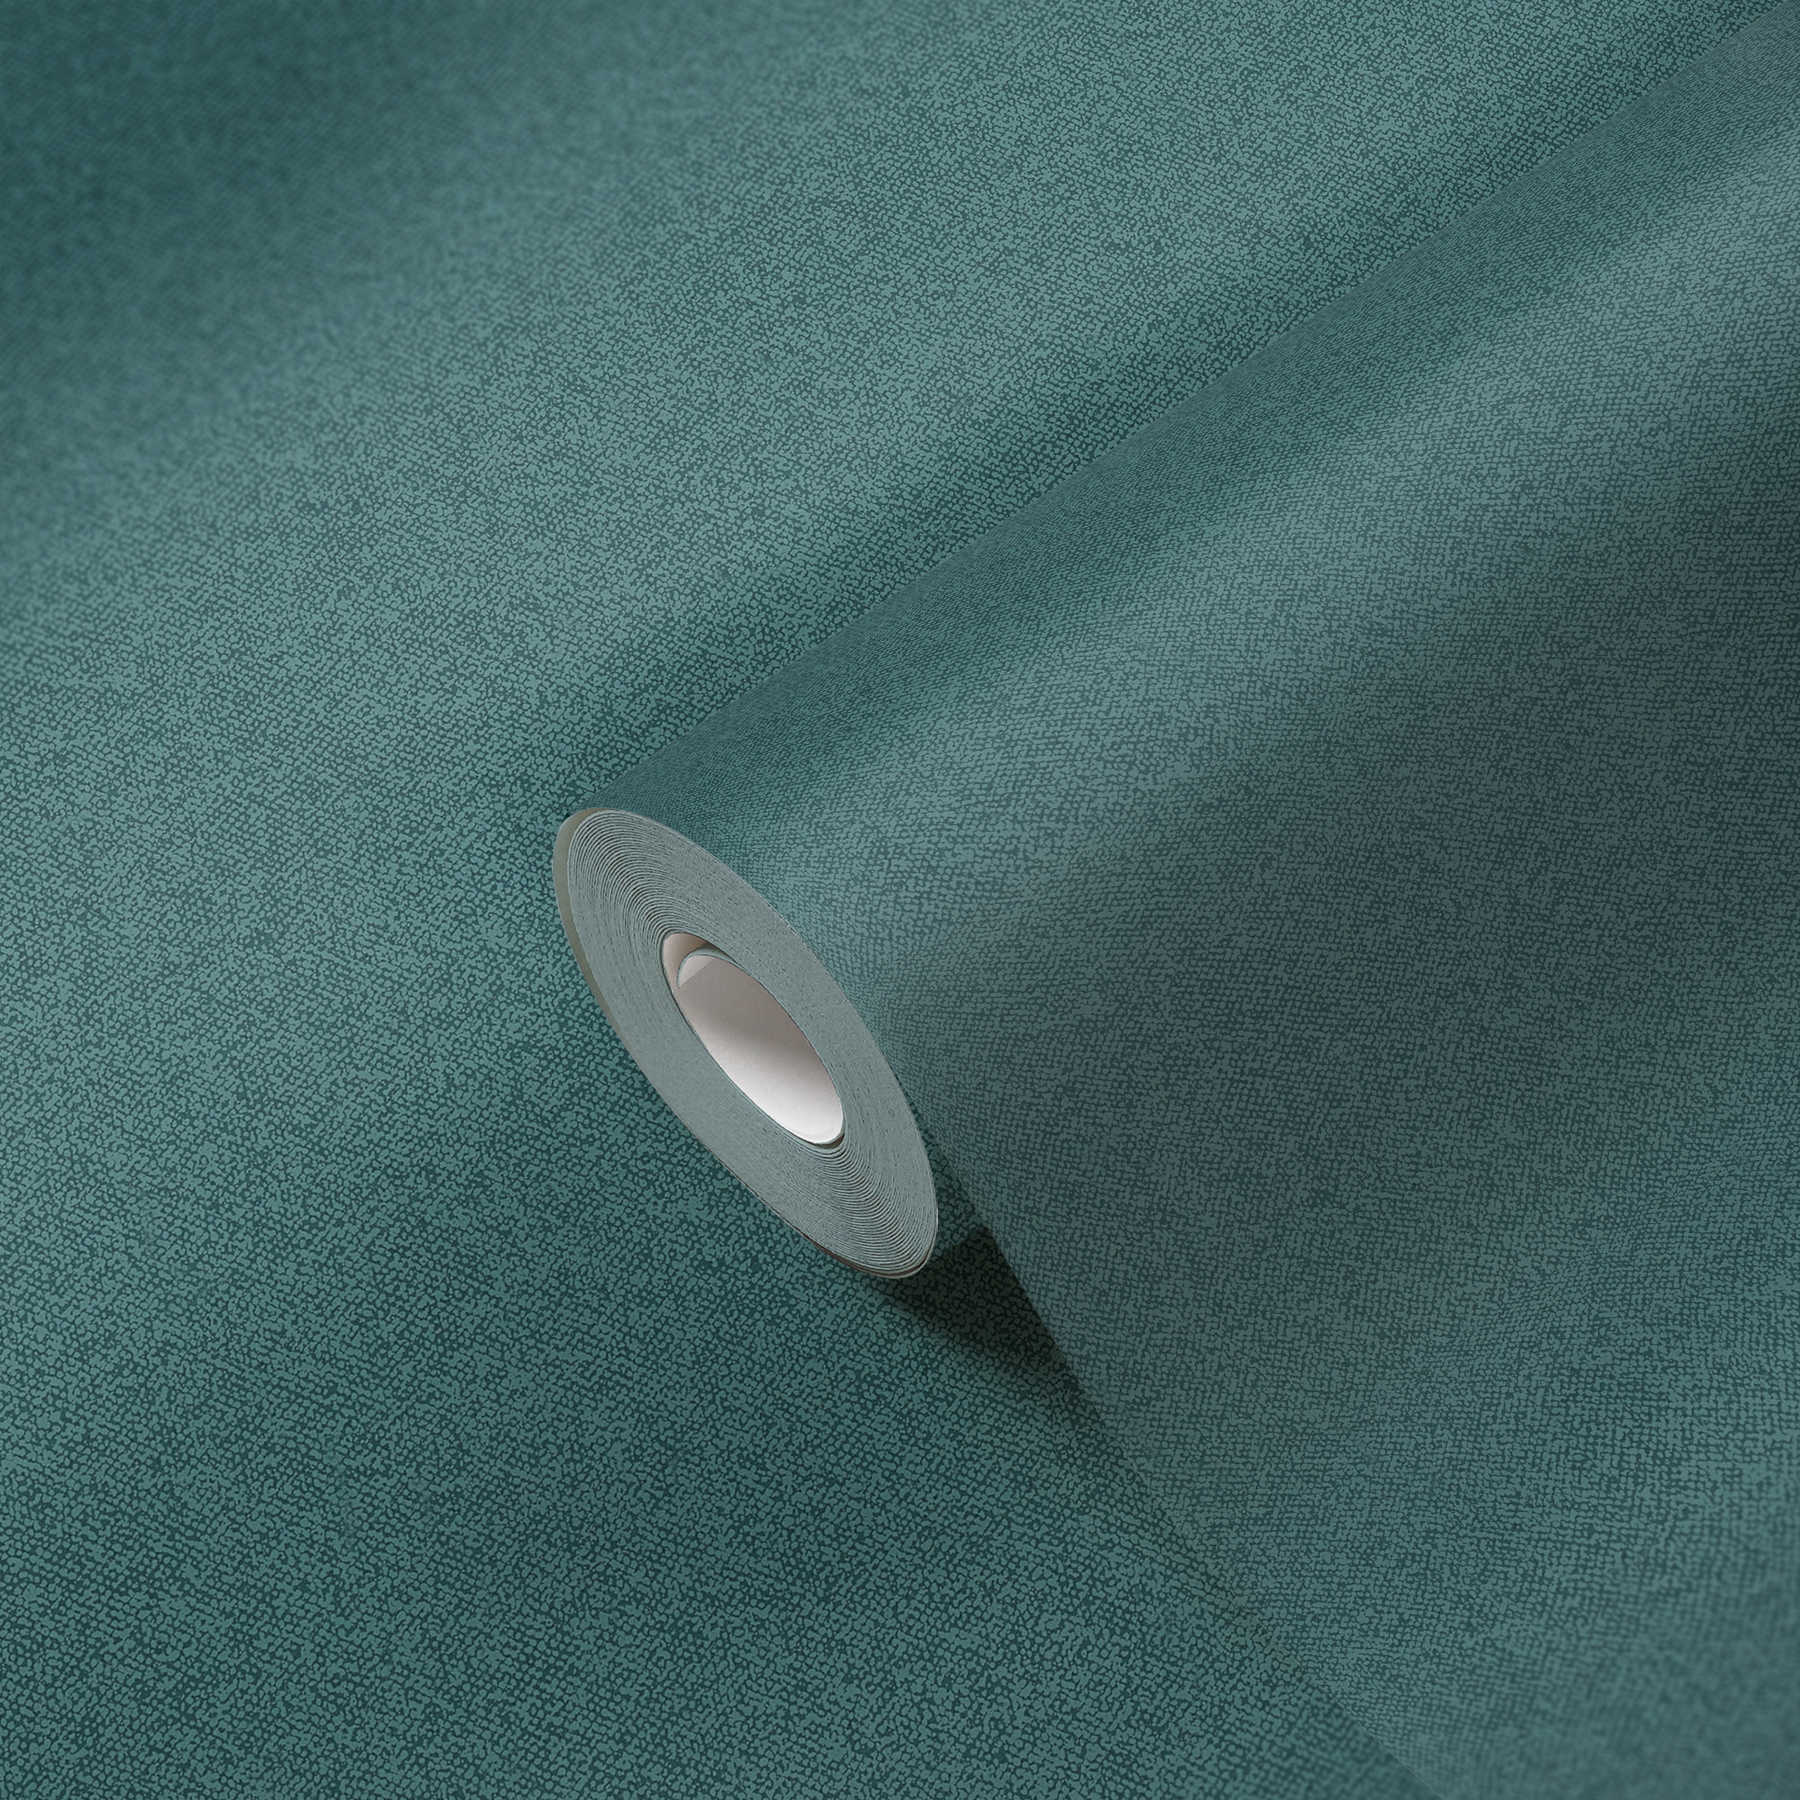             Papier peint uni aspect lin, structuré - vert, bleu
        